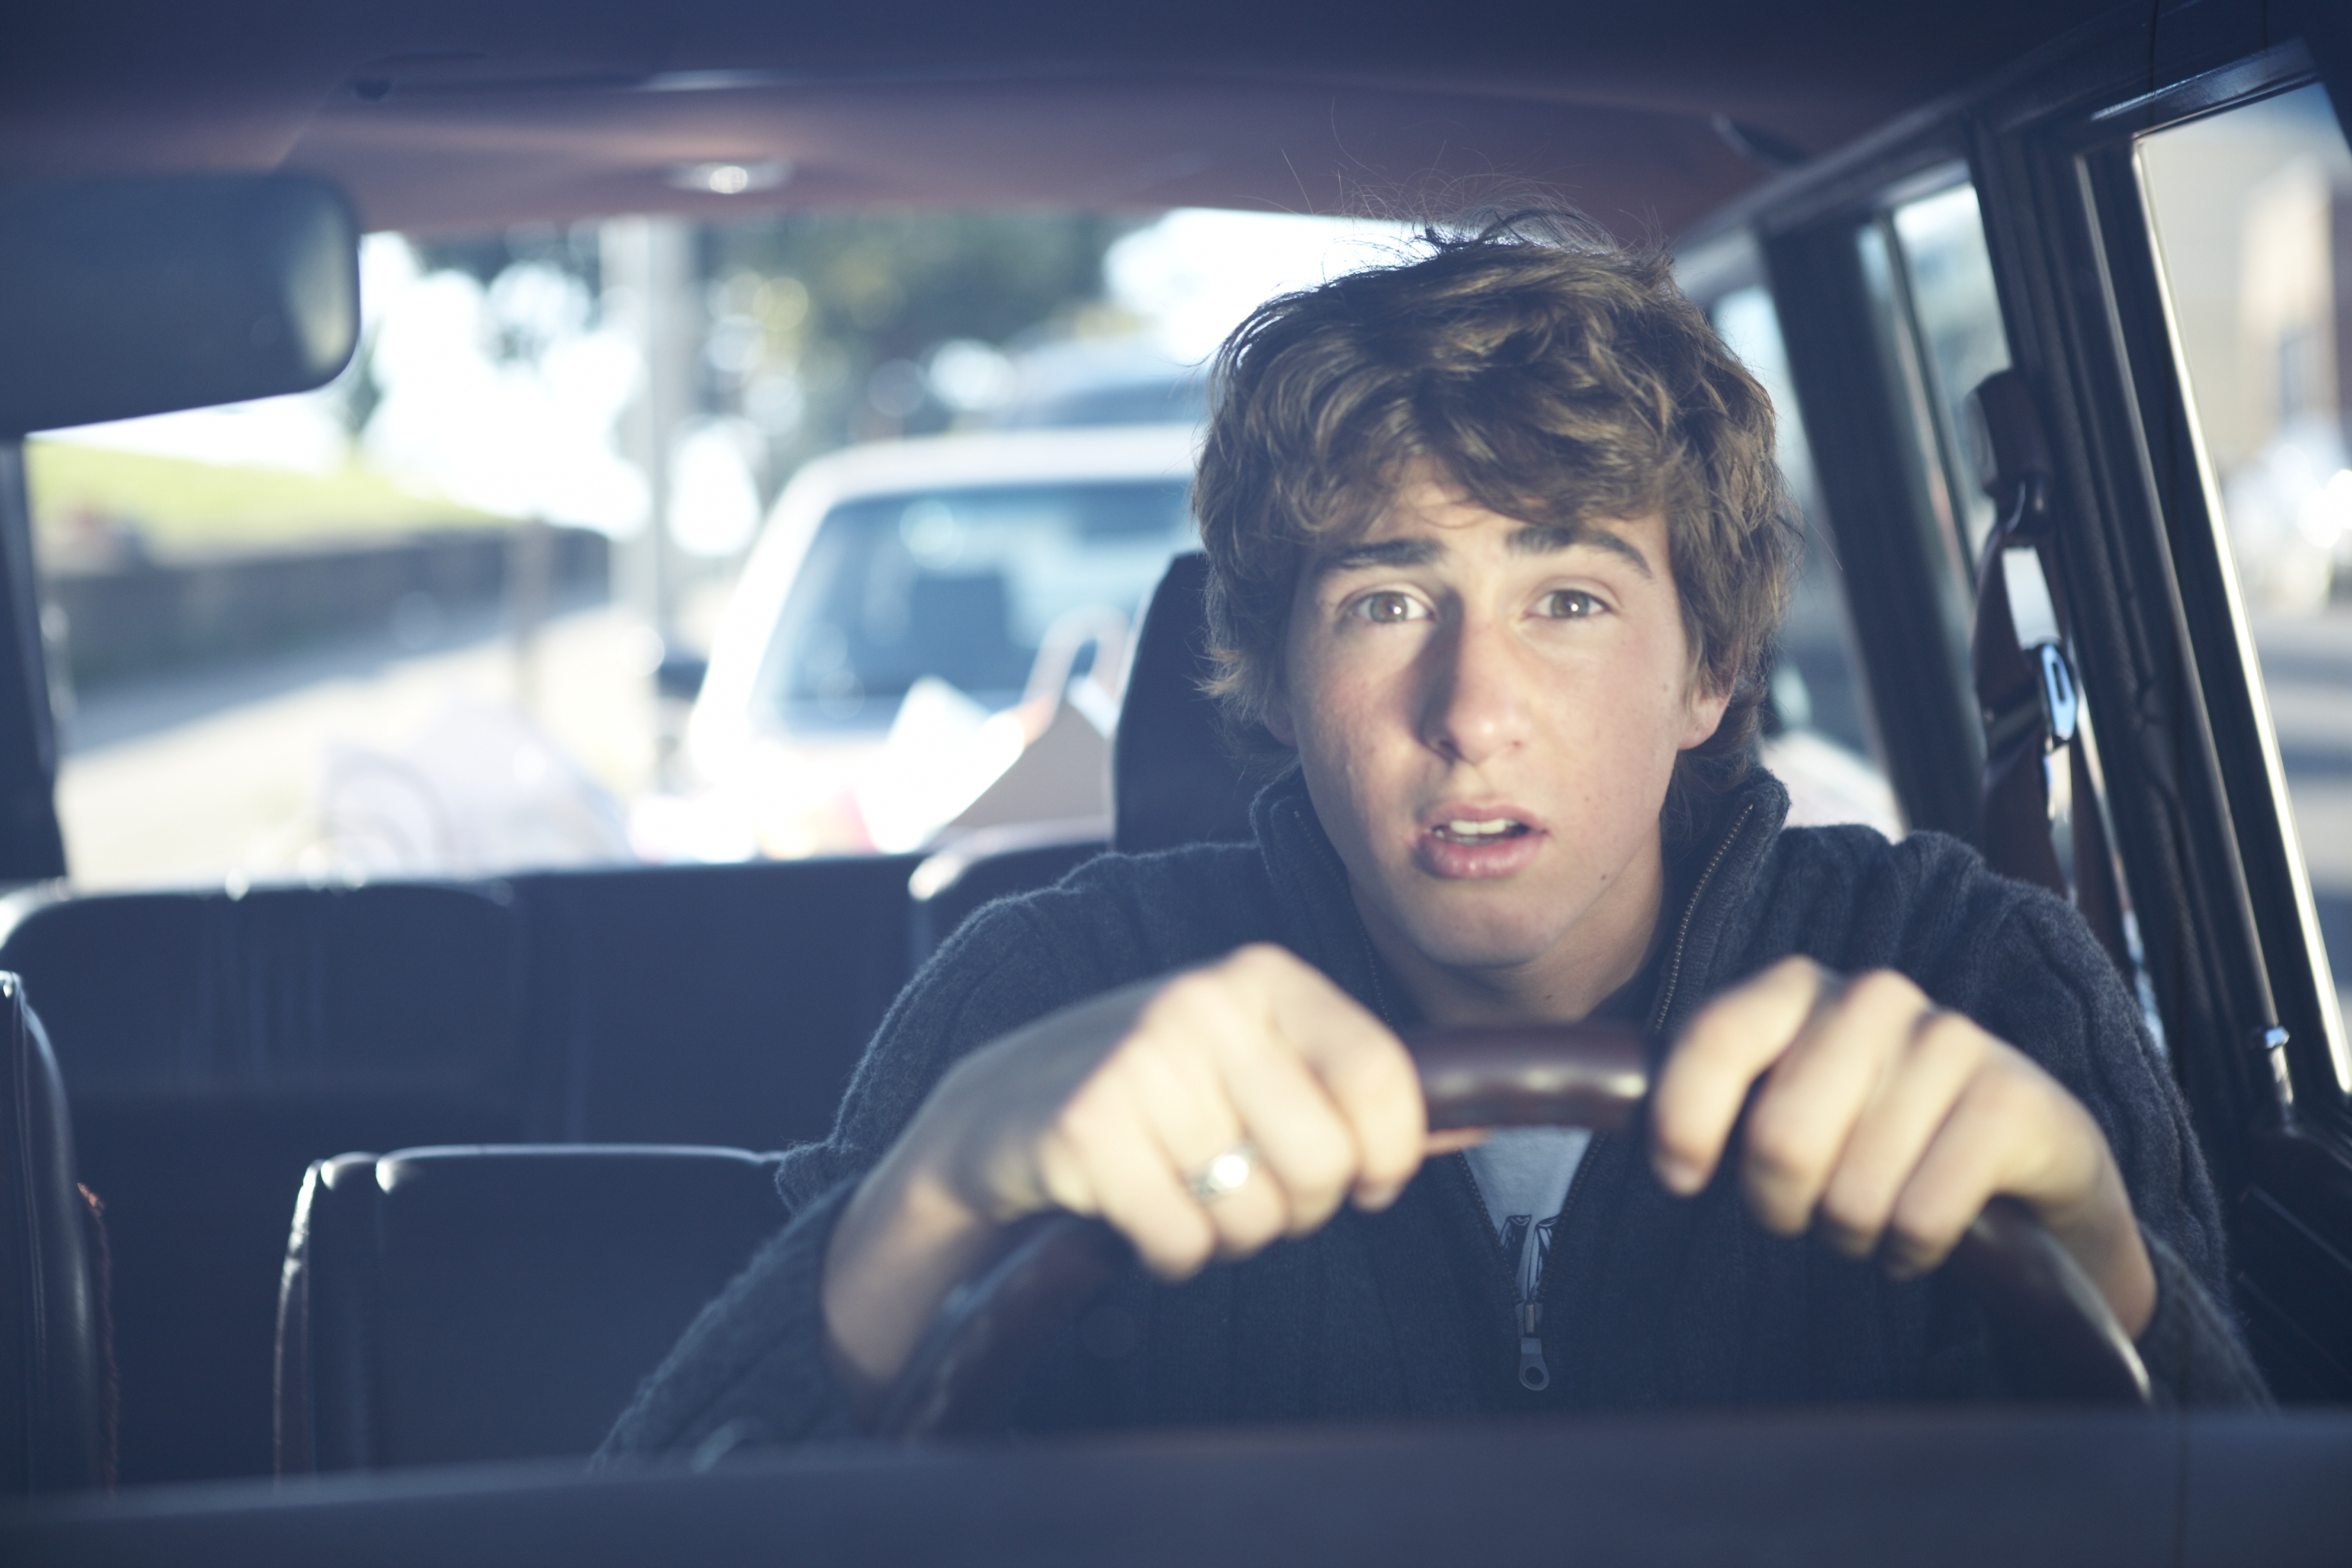 Steeds meer jongeren rijden onder invloed van drugs, lachgas en alcohol.